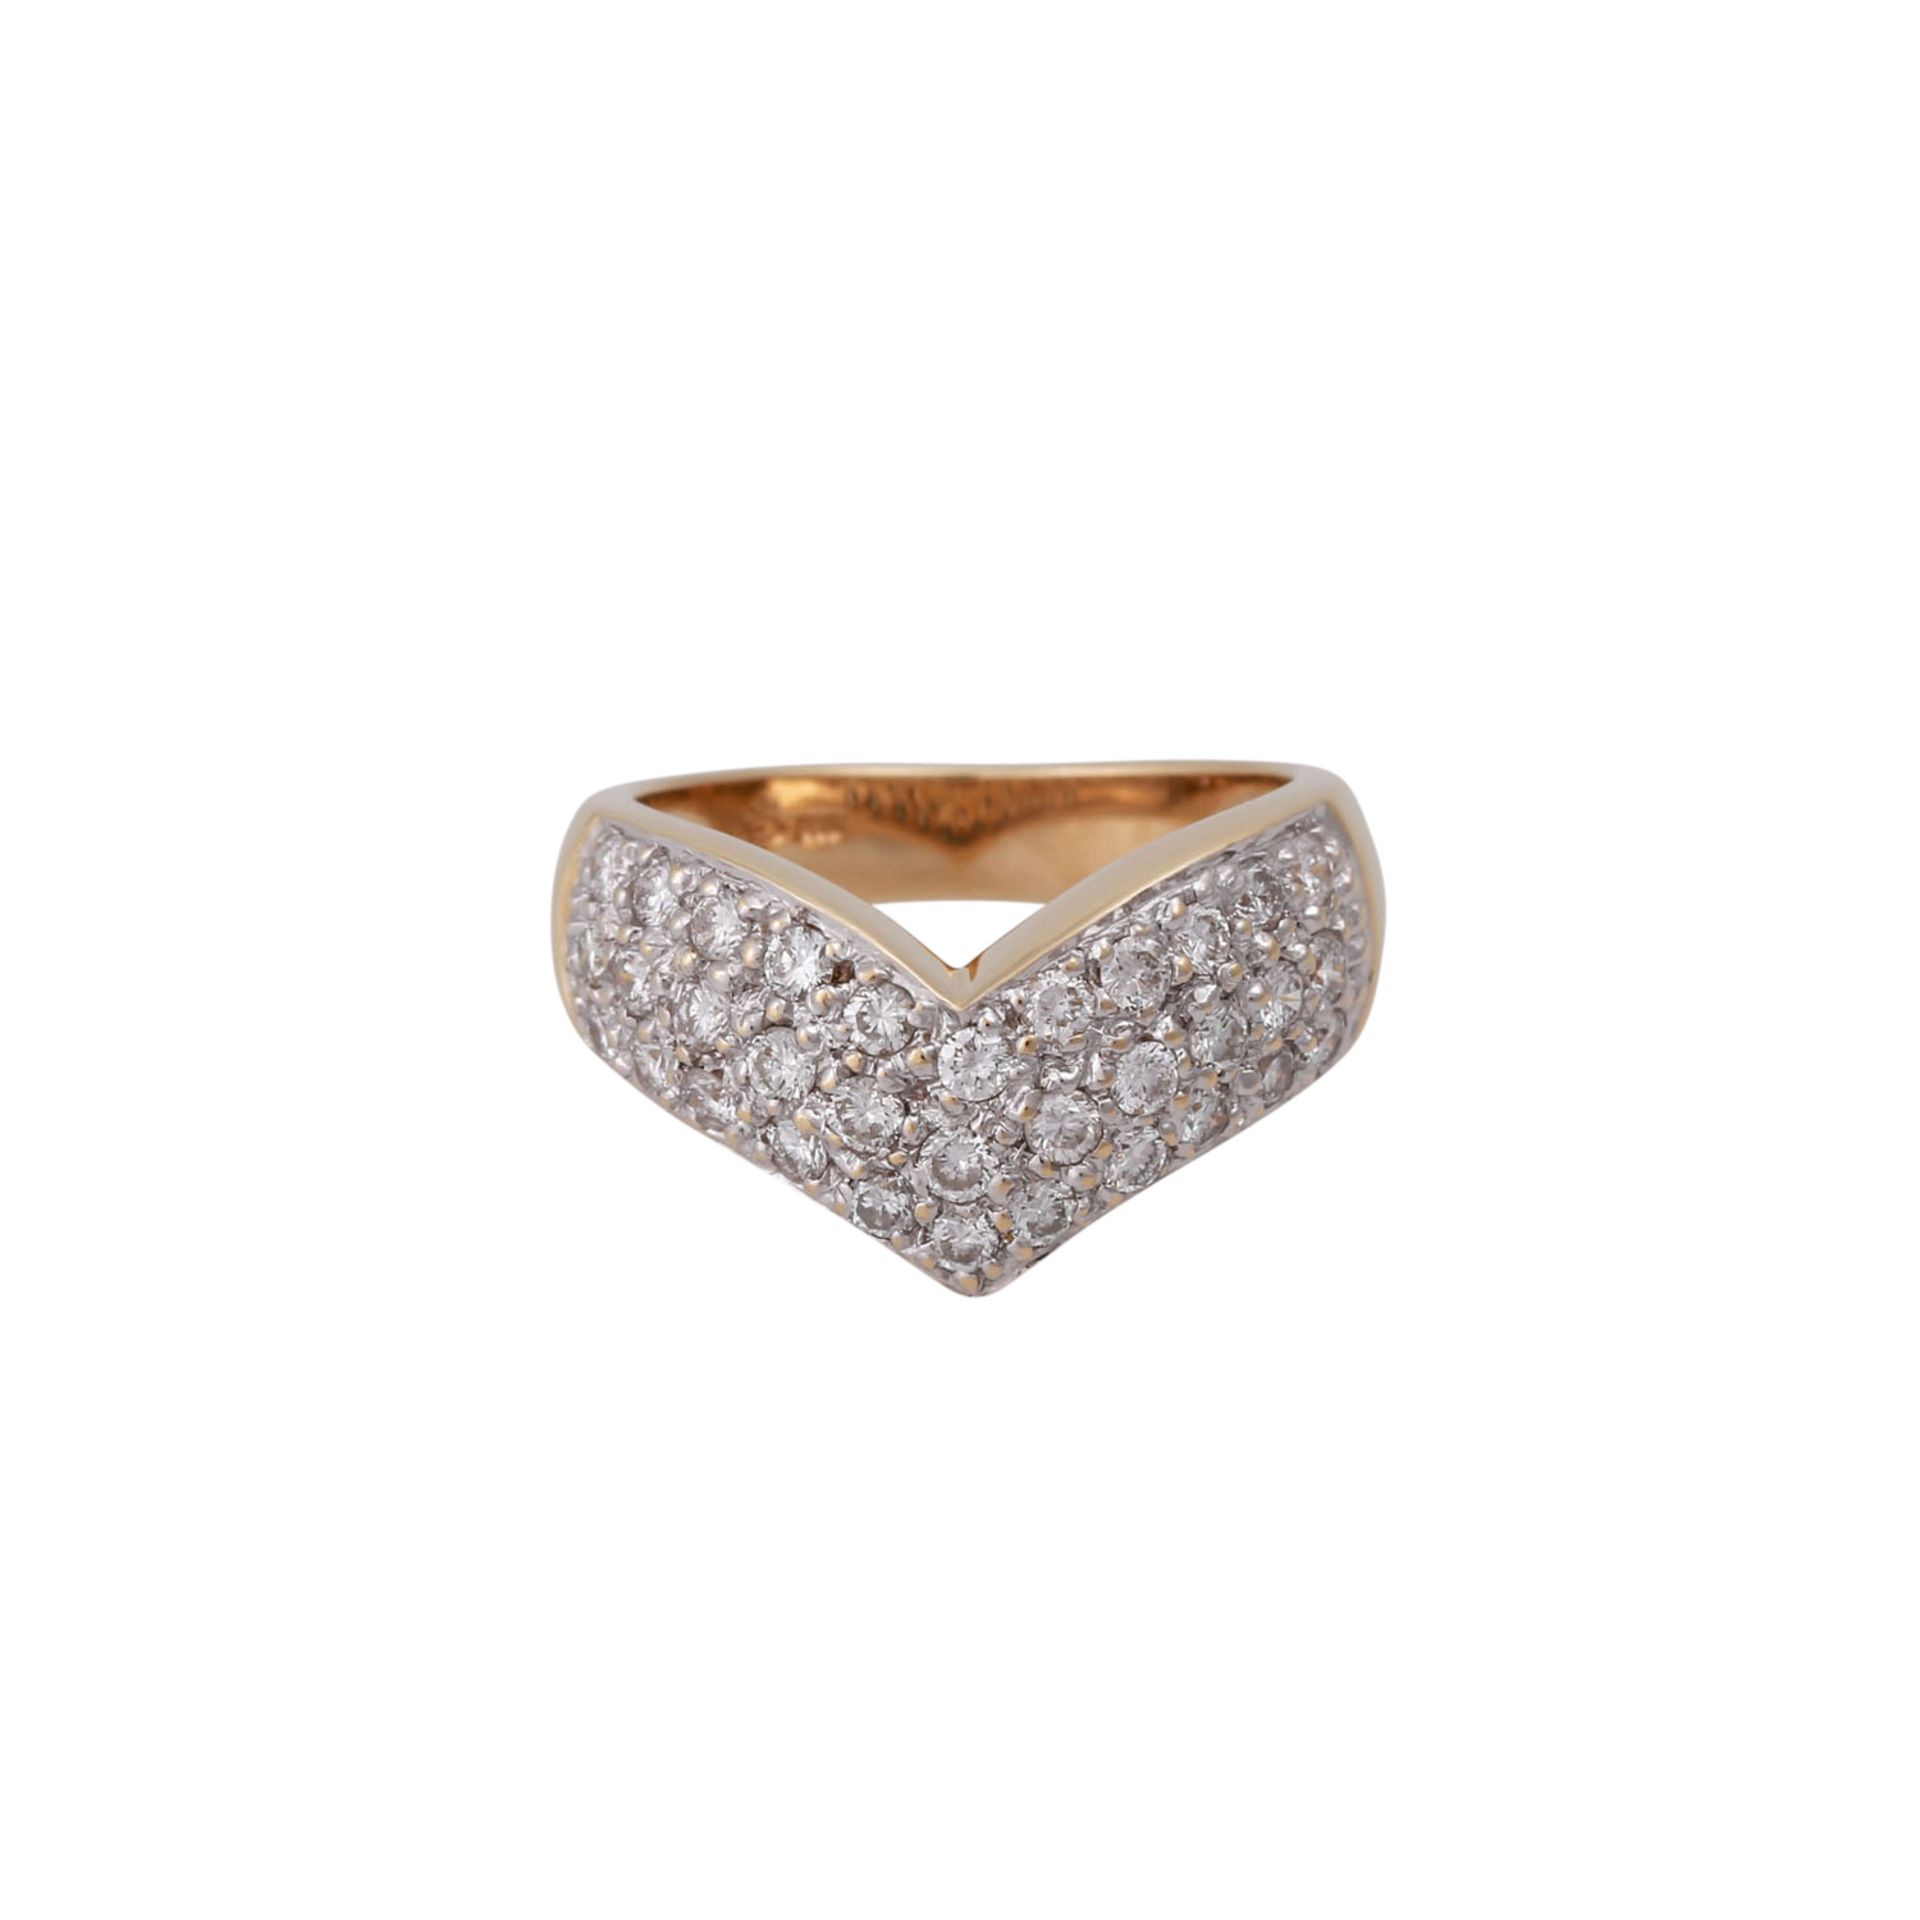 DIEMER Ring mit 33 Brillanten zus. ca. 1,6 ctvon guter Farbe und Reinheit, GG 14K, RW: 50, Ende